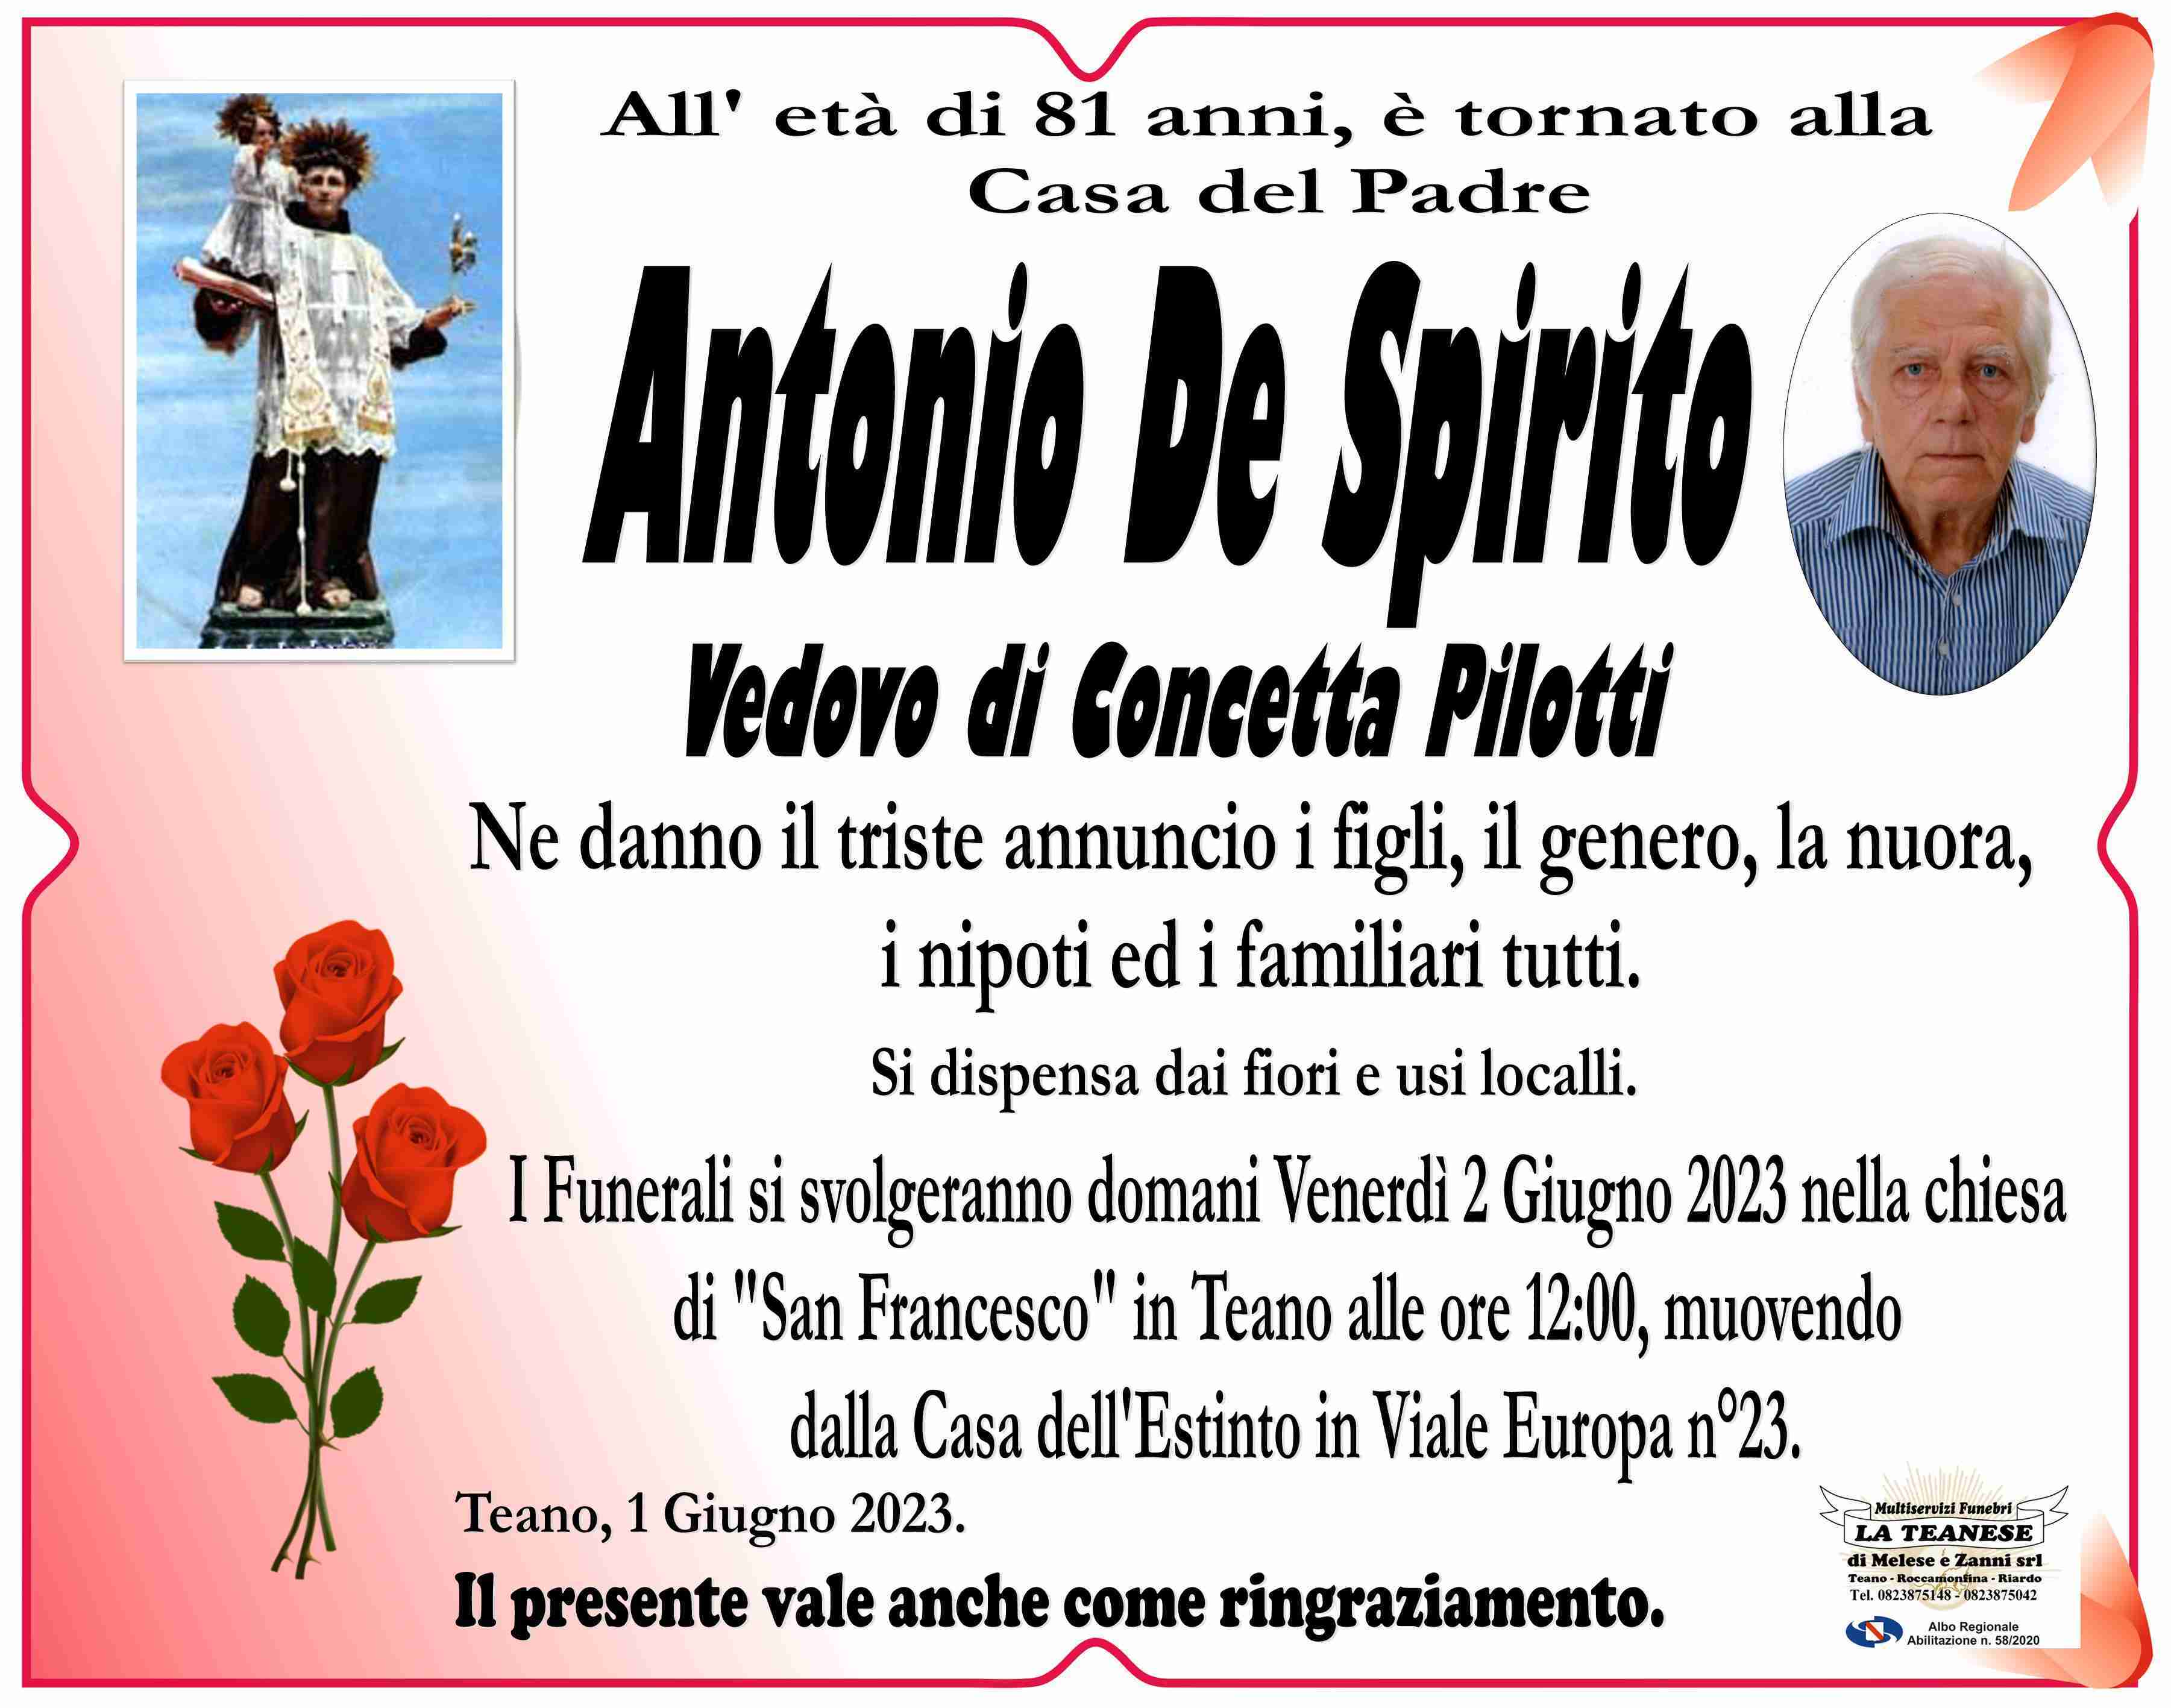 Antonio De Spirito